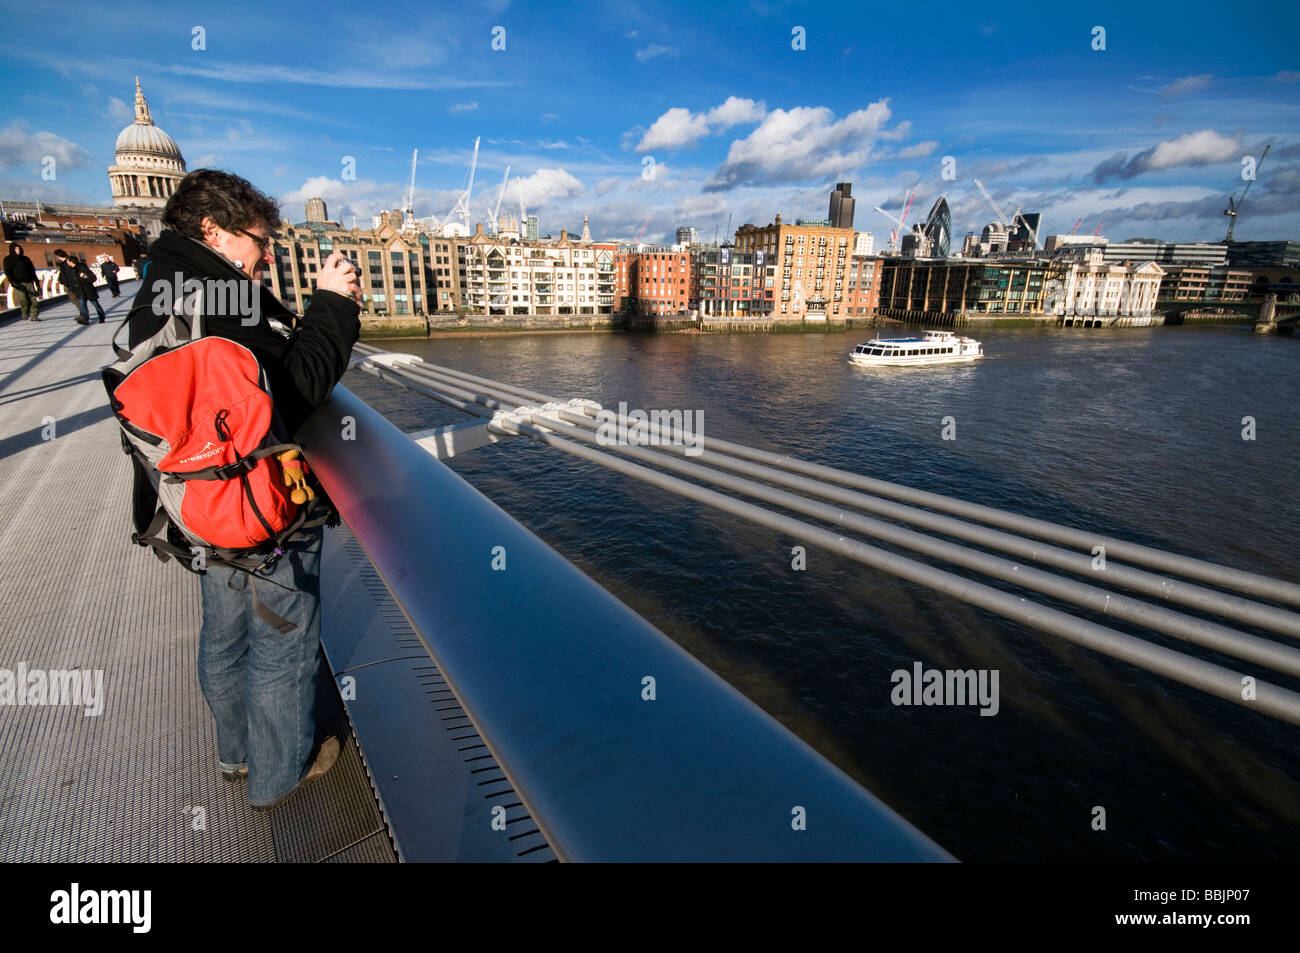 Un touriste en prenant des photos sur Millennium Bridge, London, UK Banque D'Images